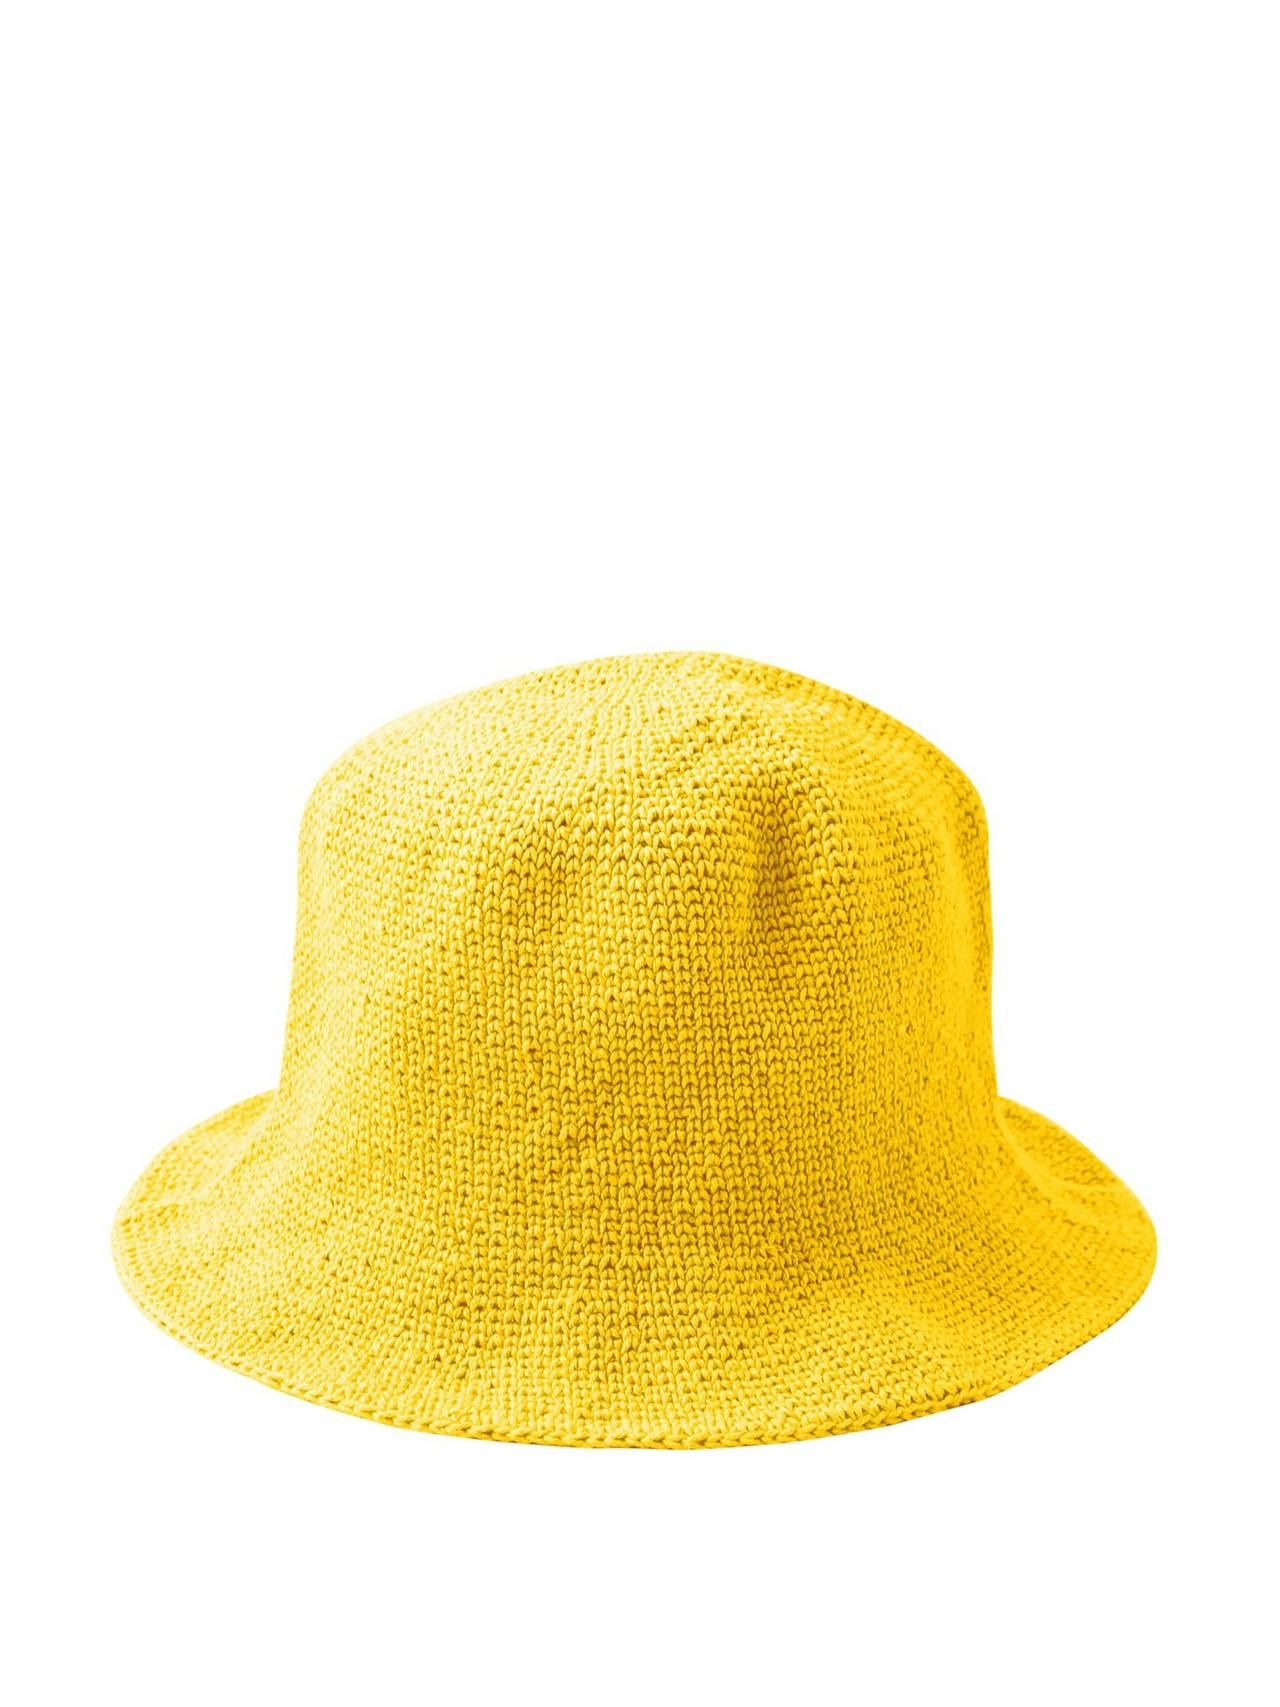 Florette crochet bucket hat in yellow